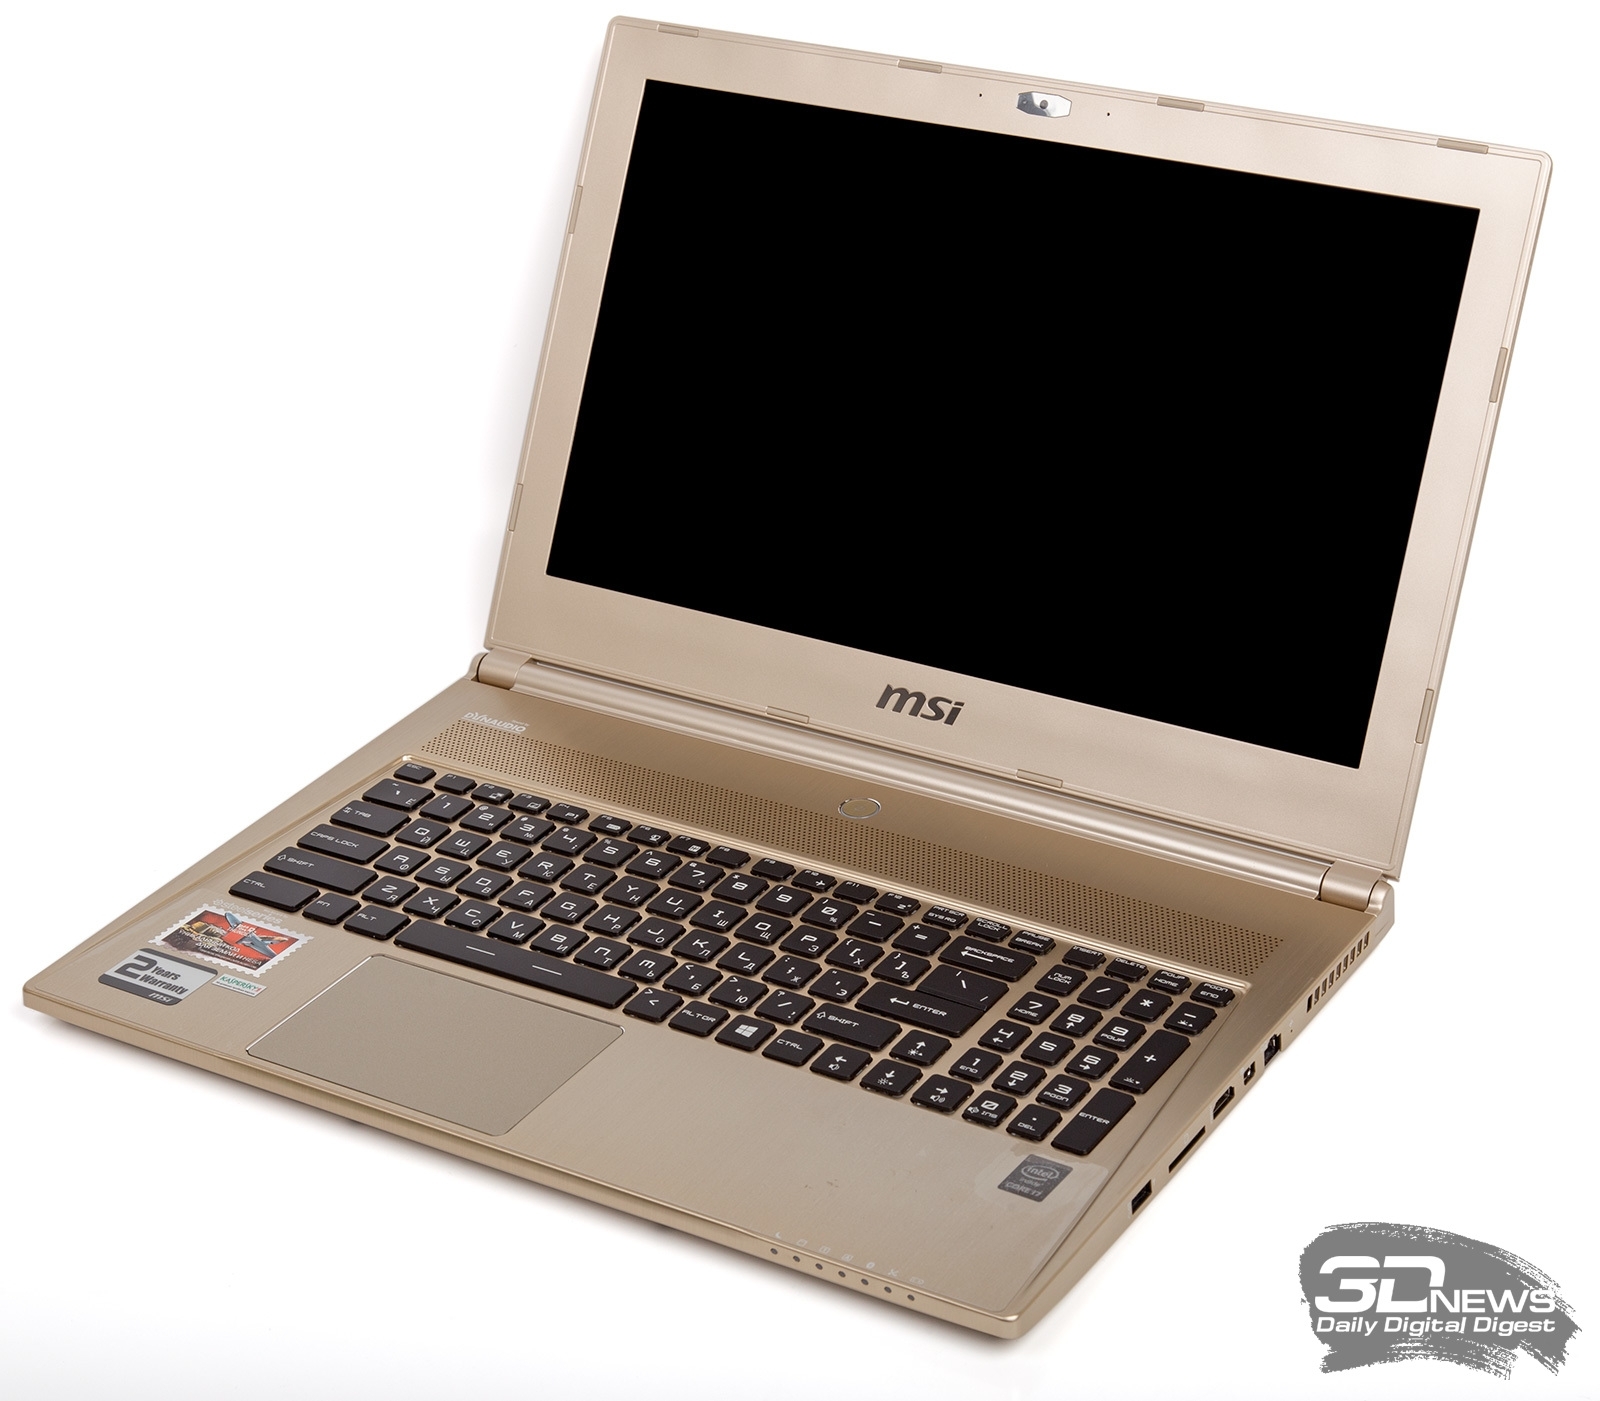 Игровой ноутбук MSI GT60 2OD 3K IPS Edition 2014 года: технические характеристики, обзоры, отзывы